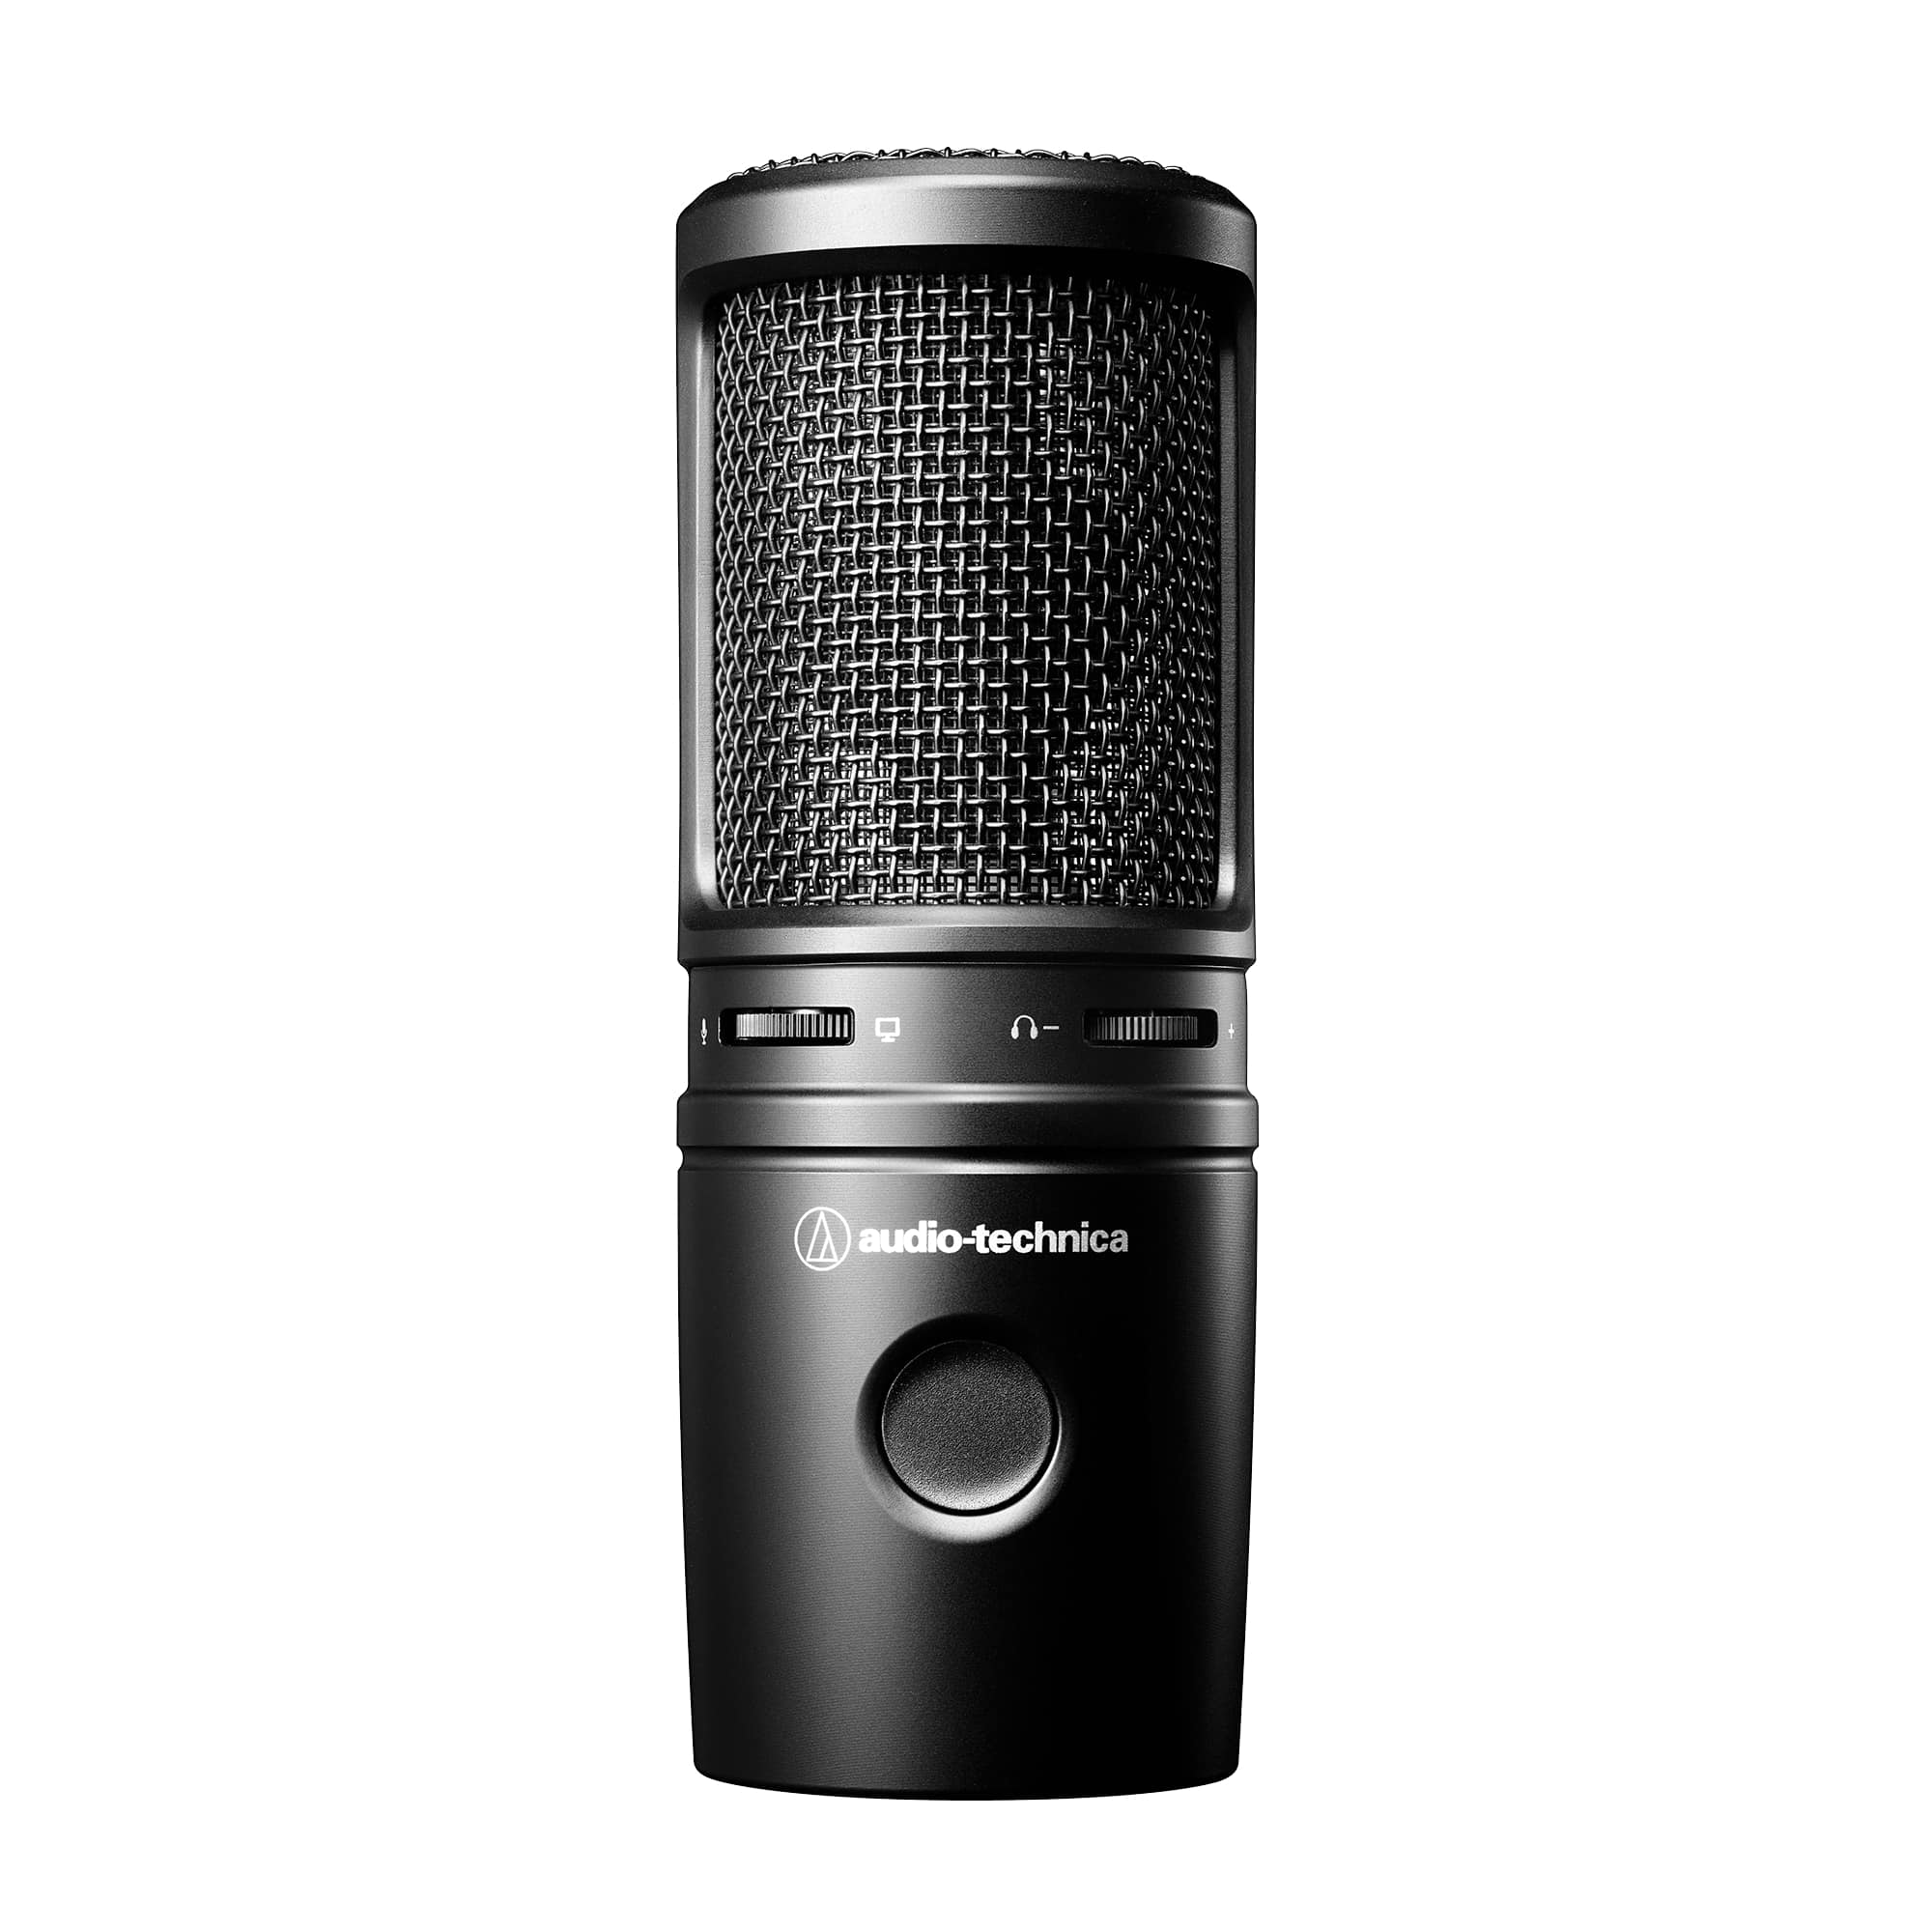 Студийные микрофоны Audio Technica AT2020USBX микрофоны для тв и радио audio technica atr6250